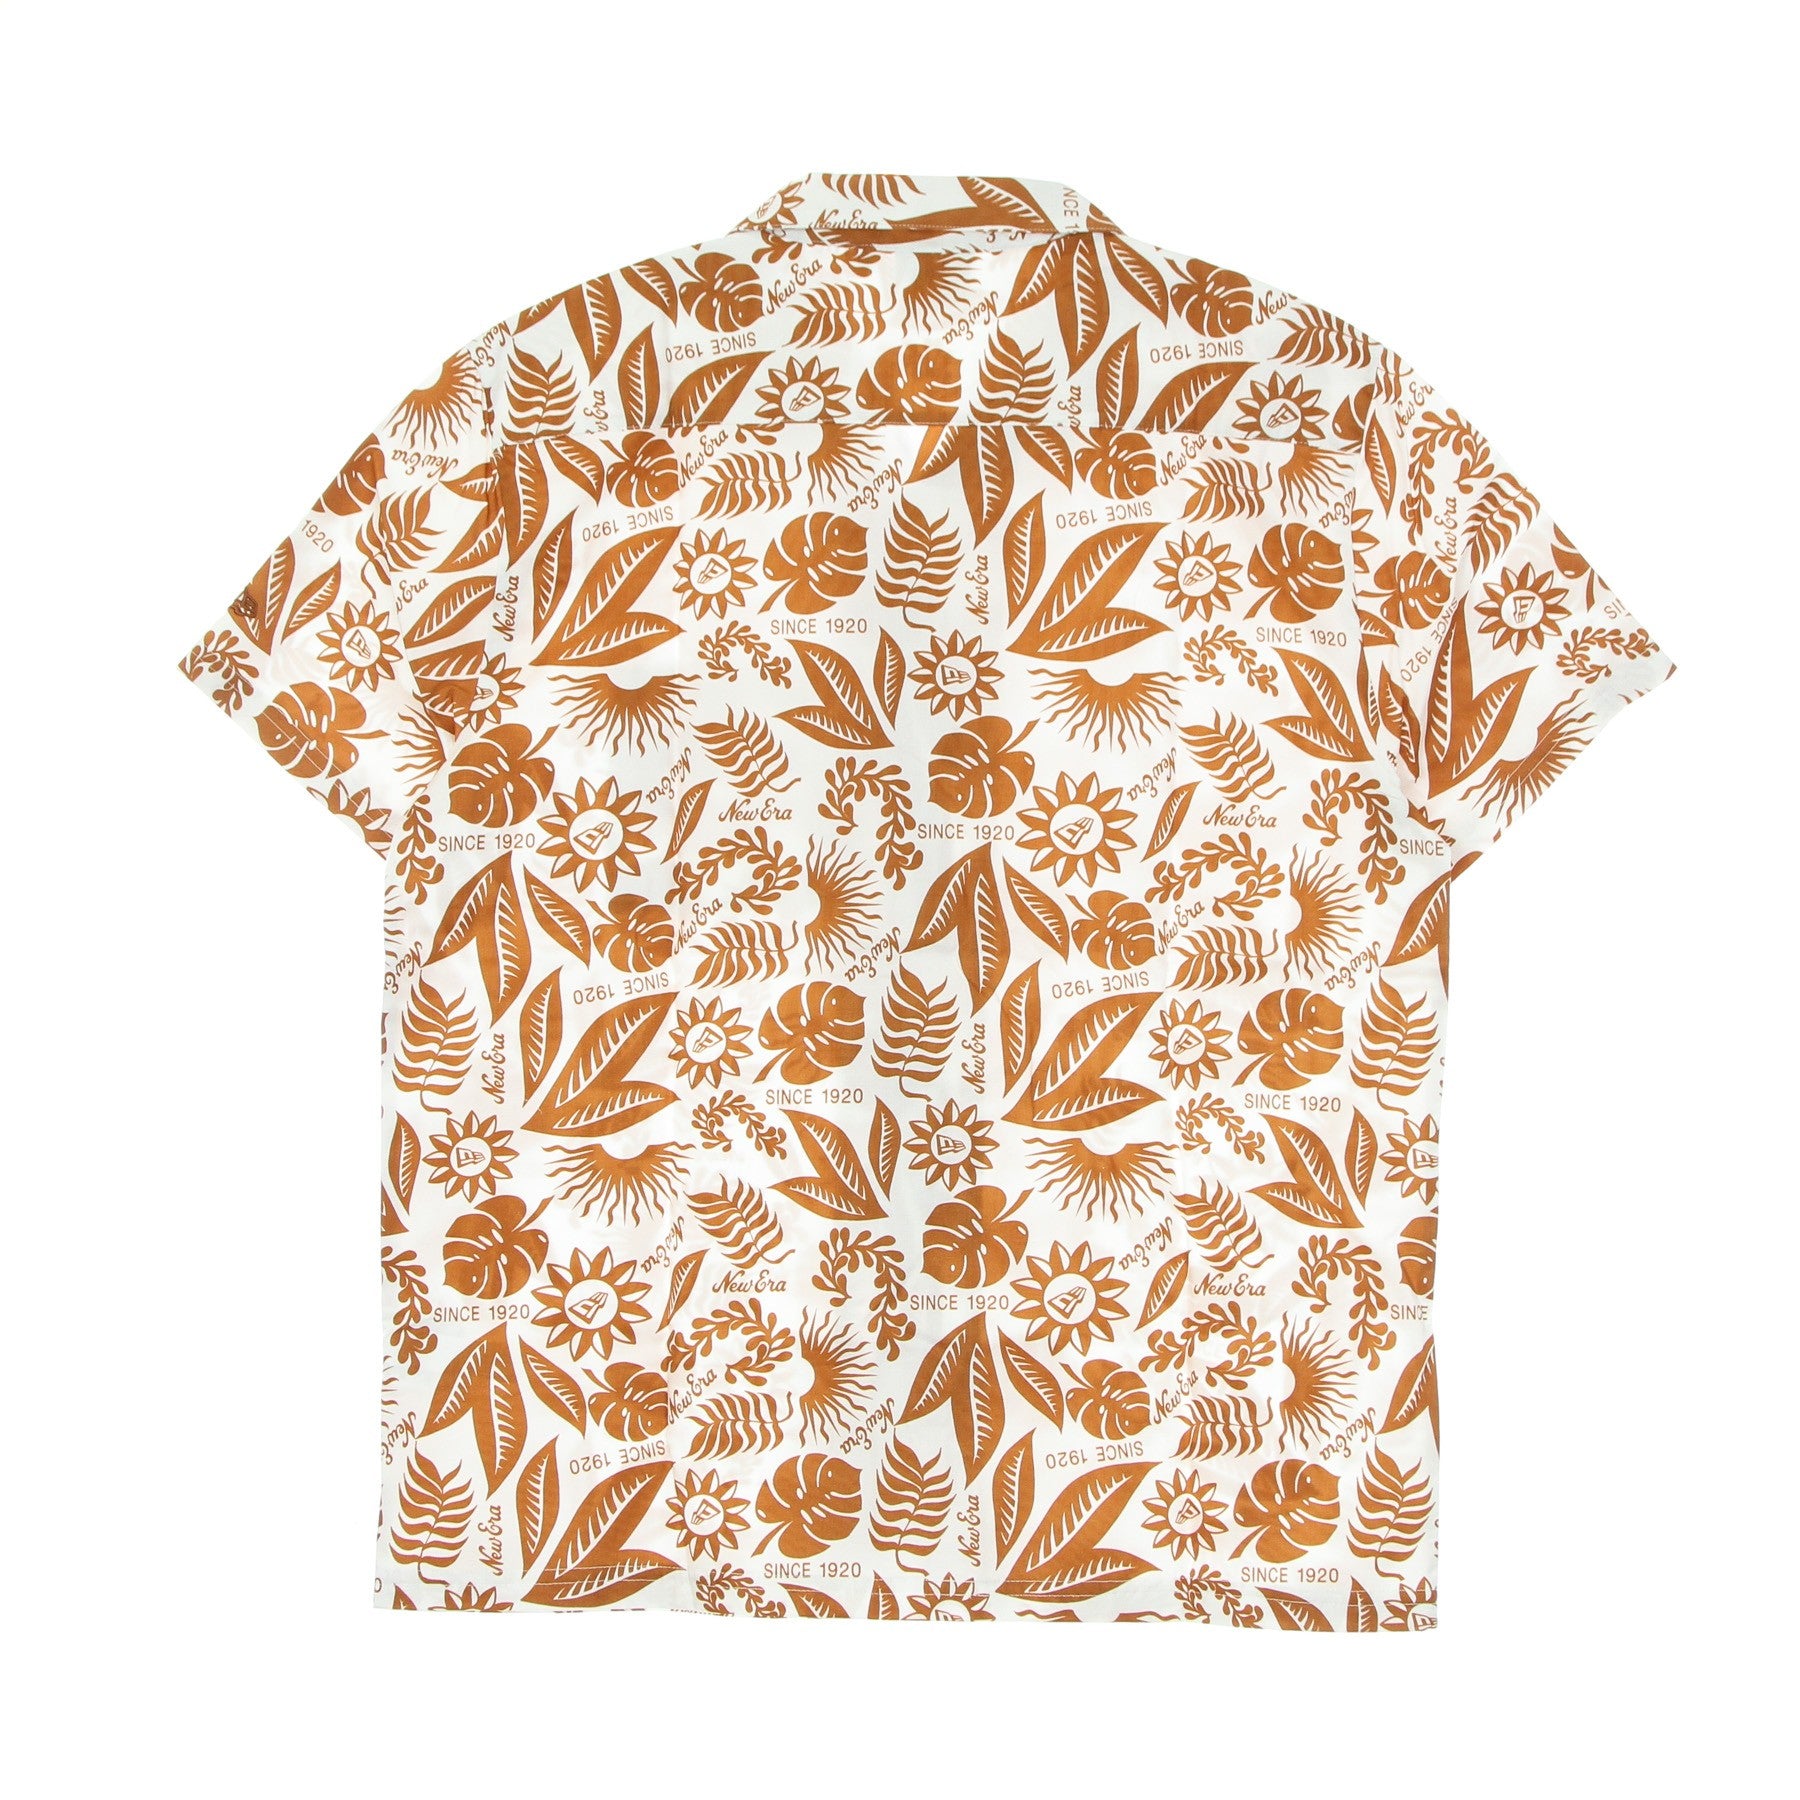 Men's Short Sleeve Shirt Ne Floral All Over Print Revere Shirt